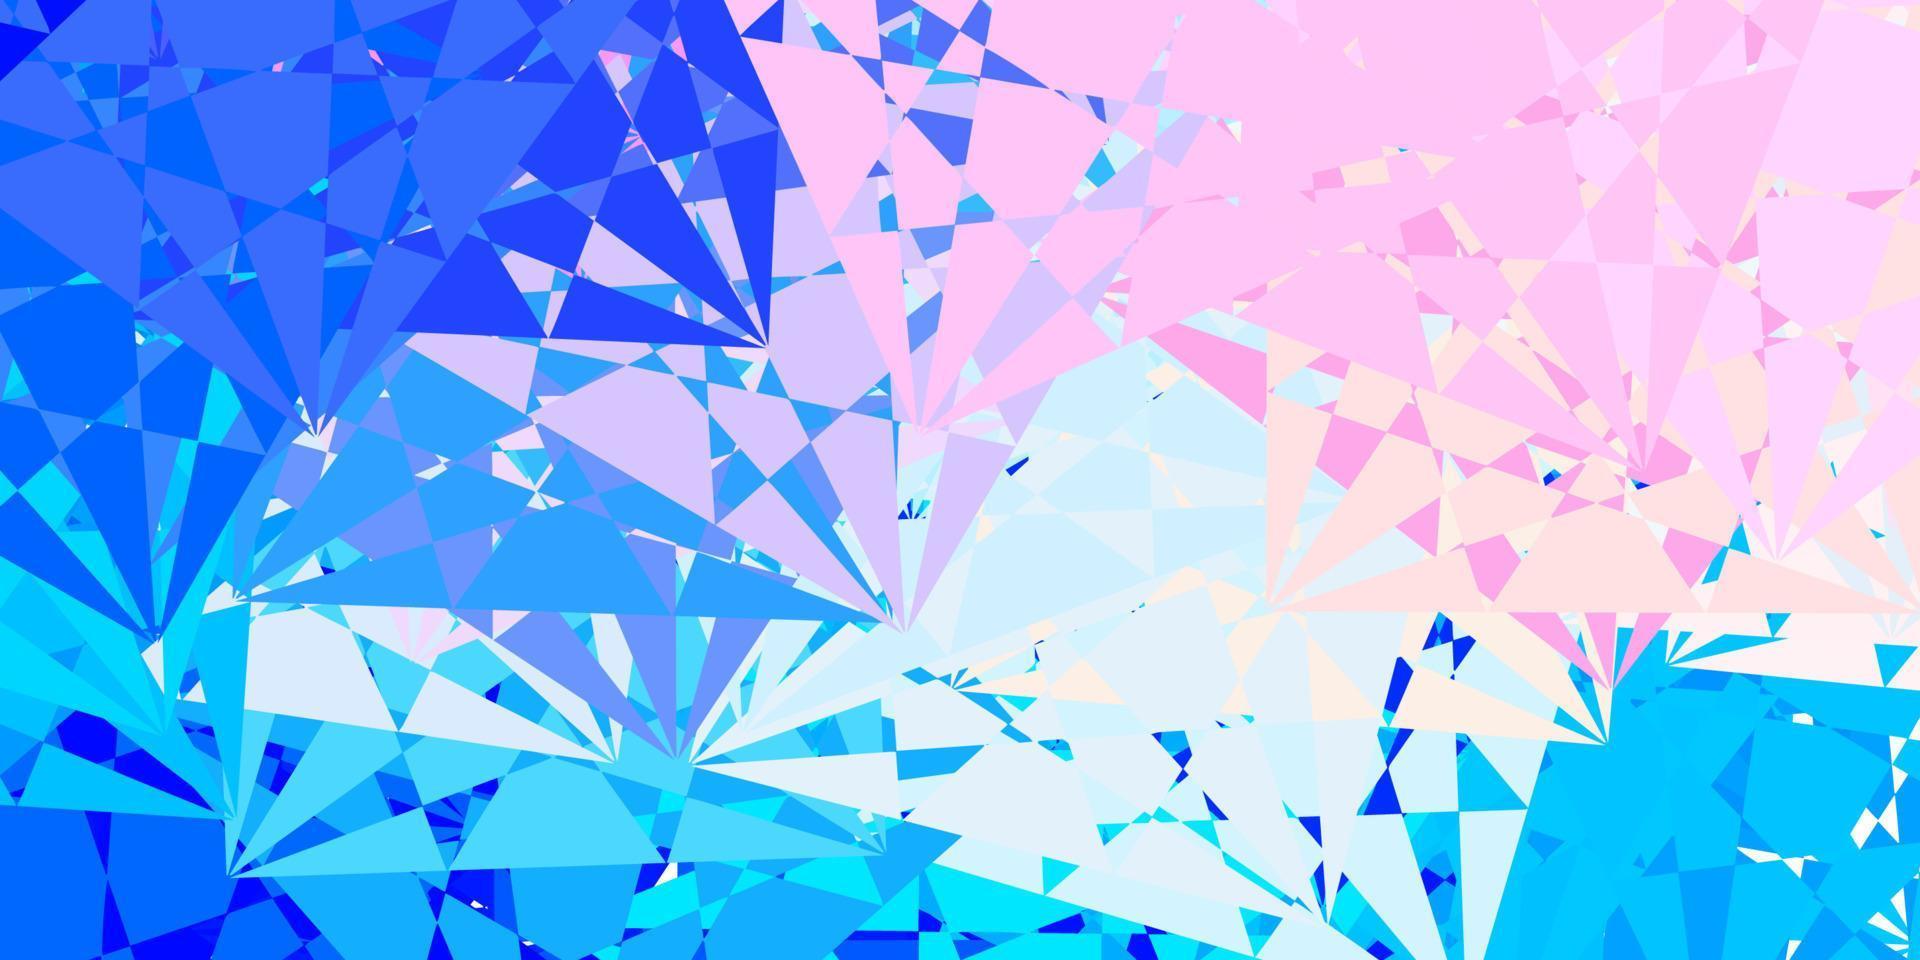 ljusrosa, blå vektormall med triangelformer. vektor